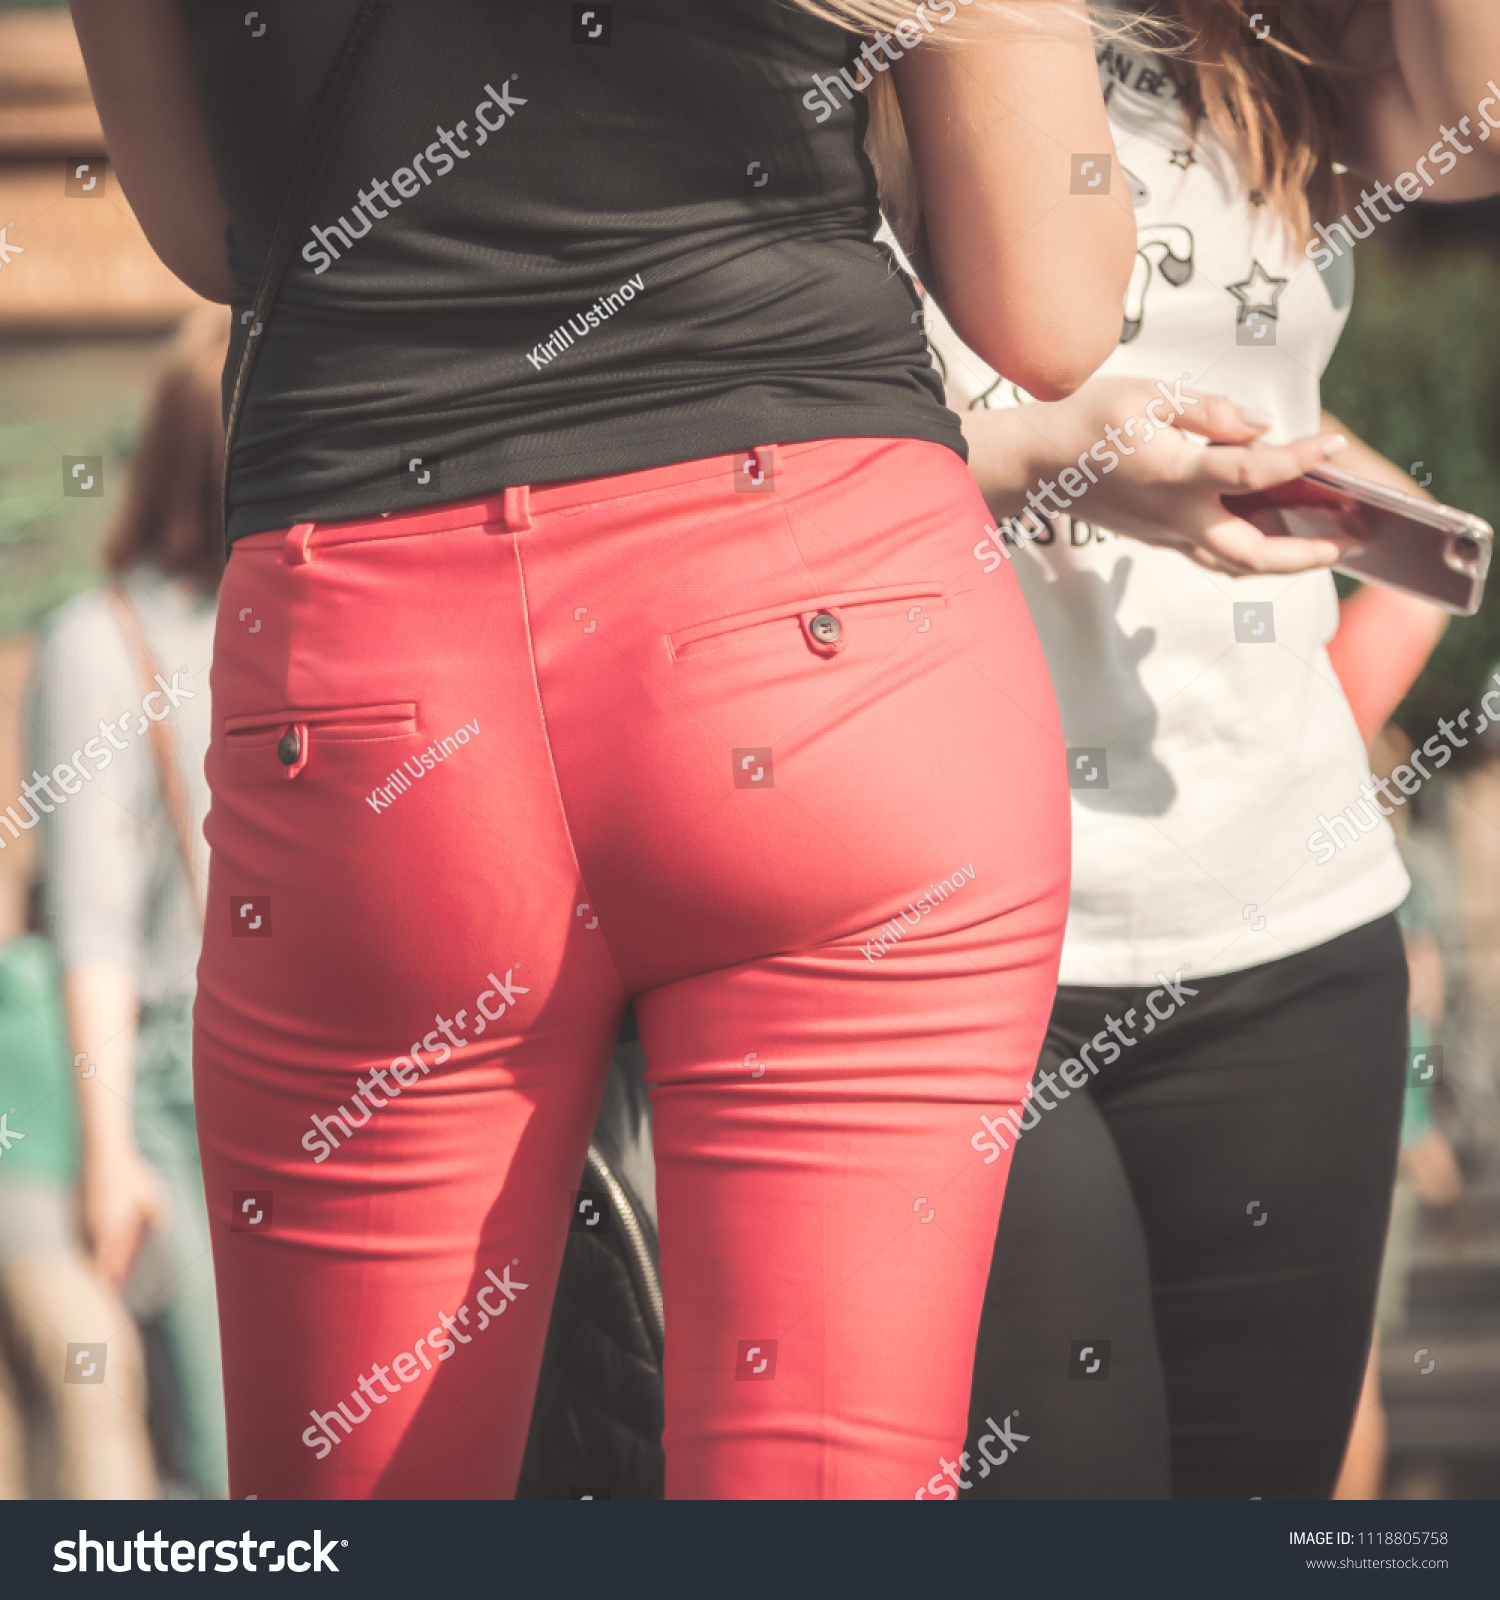 Women Ass Pics